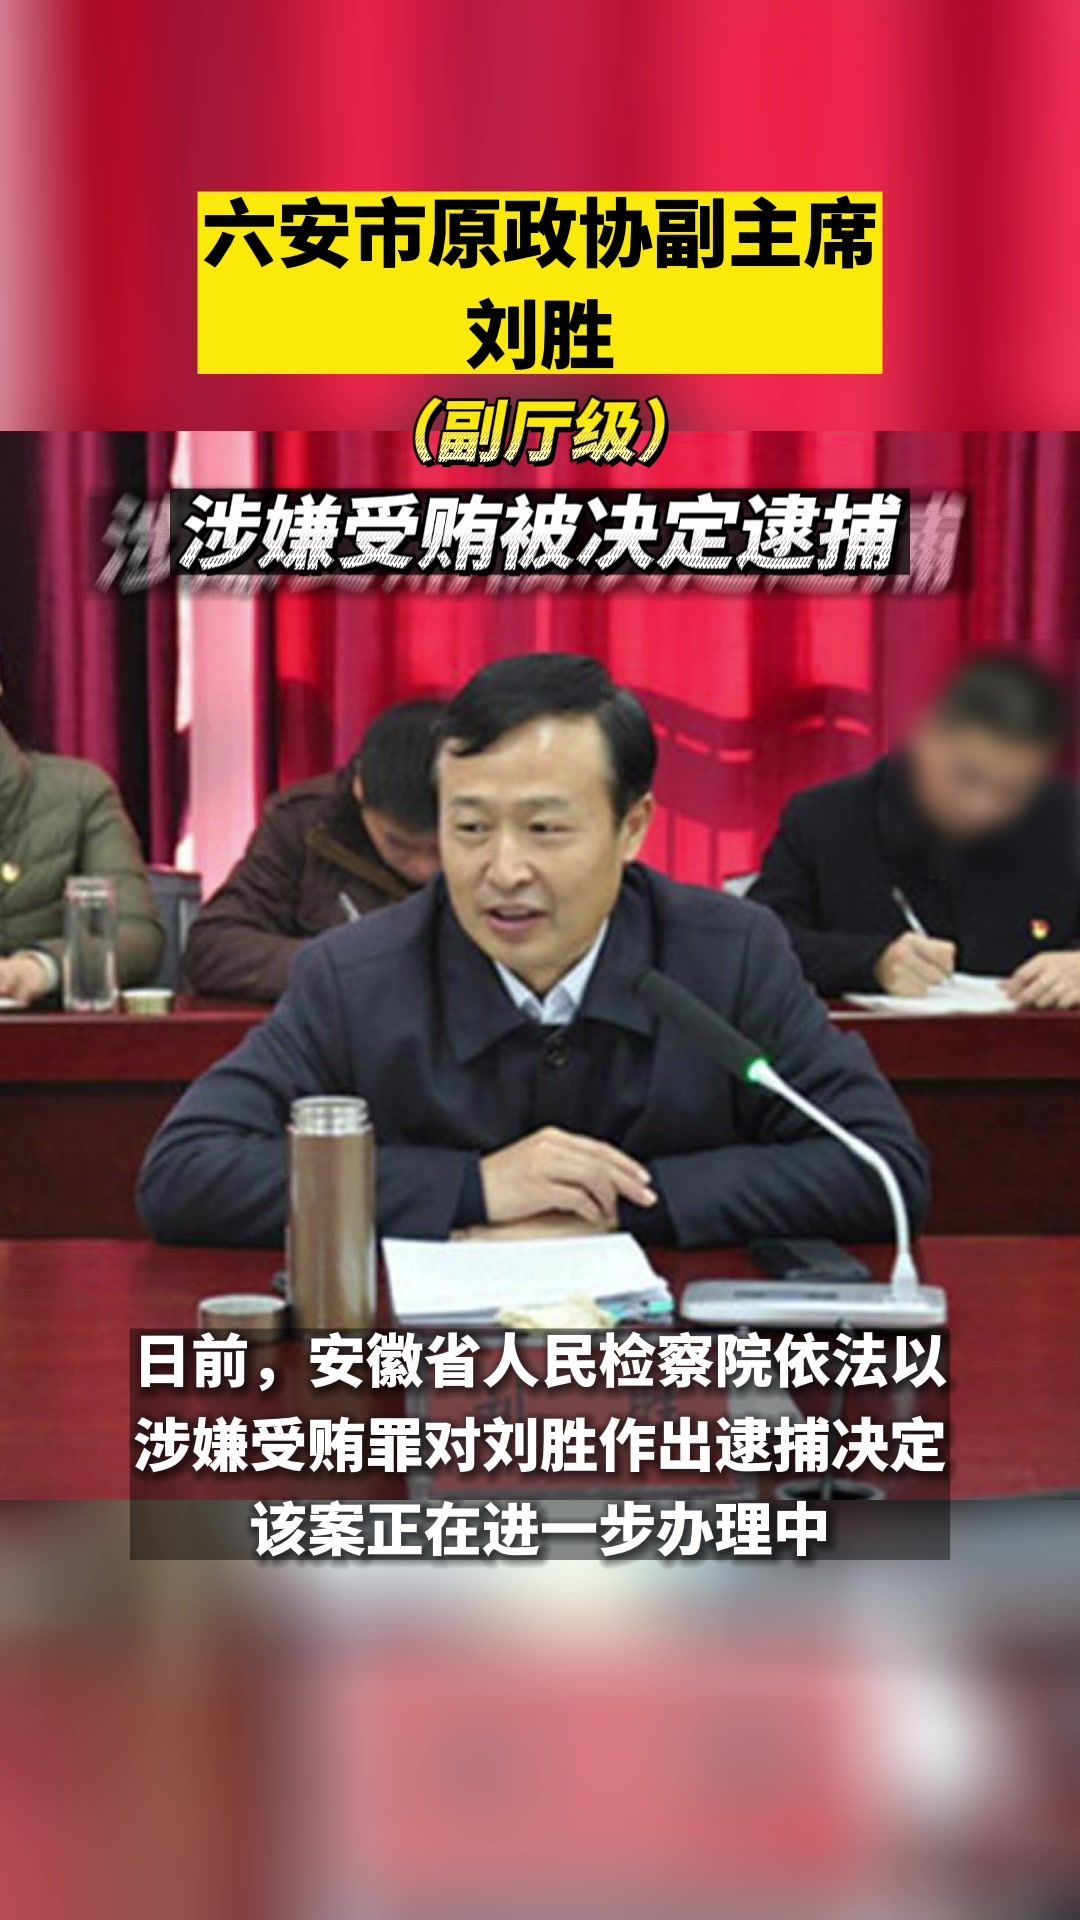 六安市原政协副主席刘胜涉嫌受贿被决定逮捕#六安#安徽#最新消息